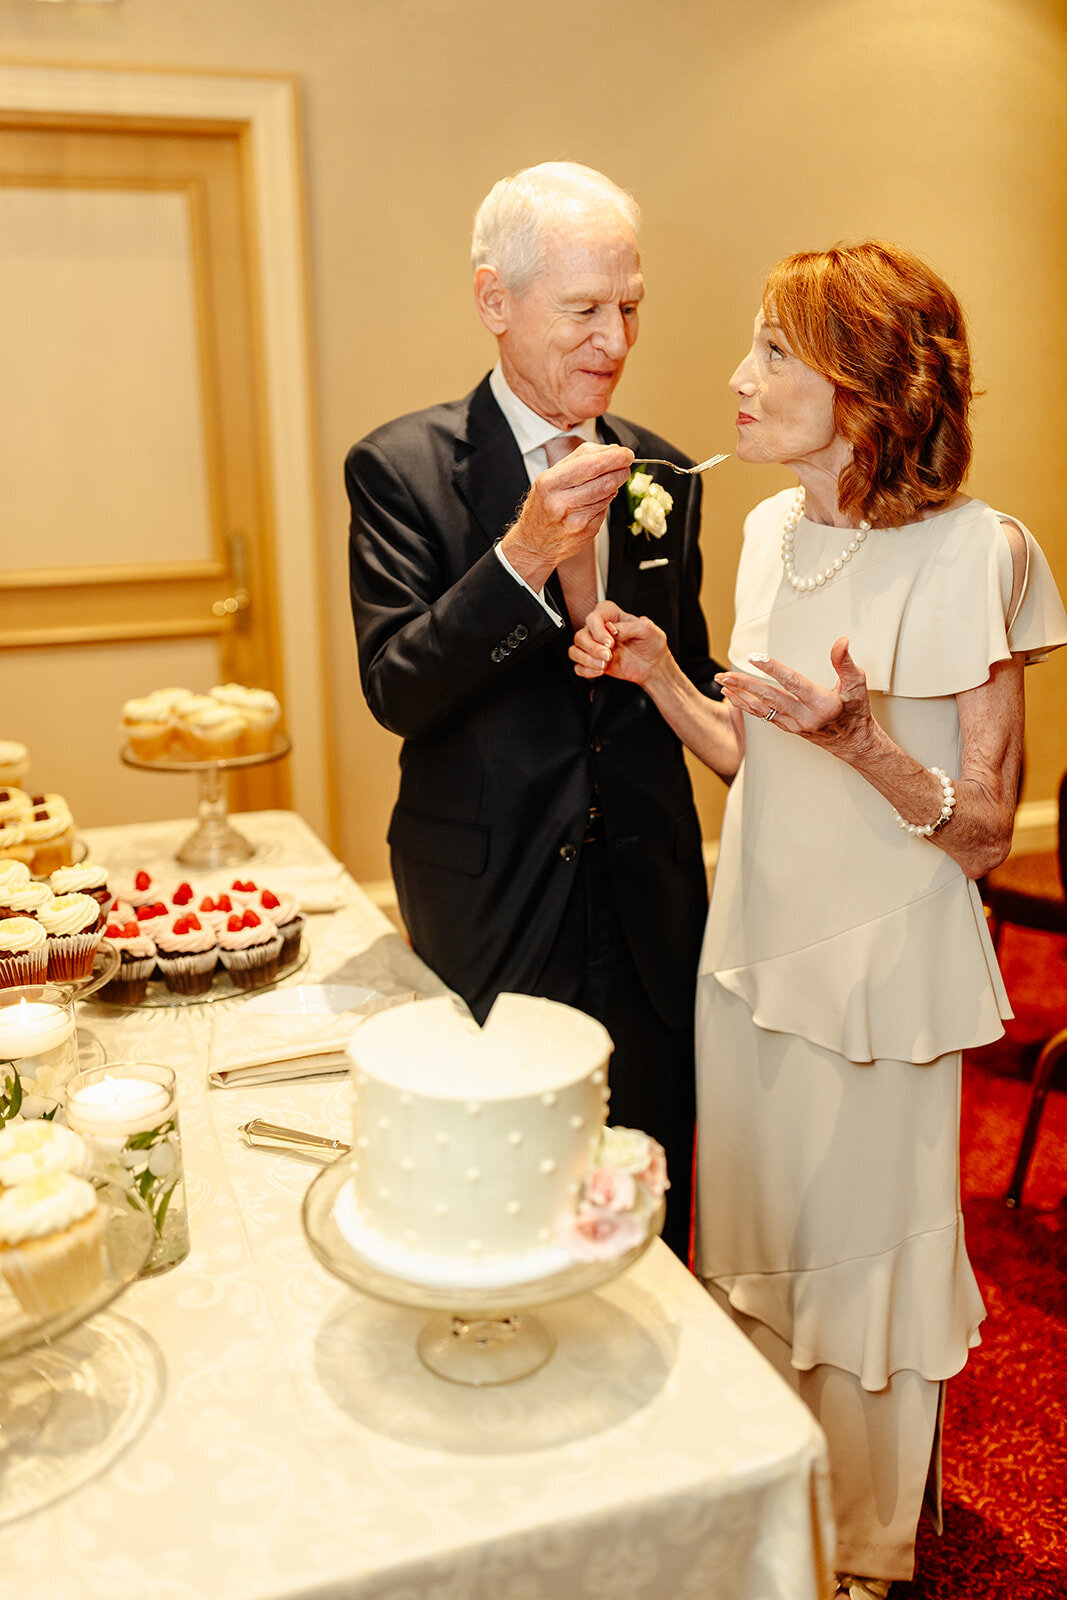 bride-groom-cake-cutting-feeding